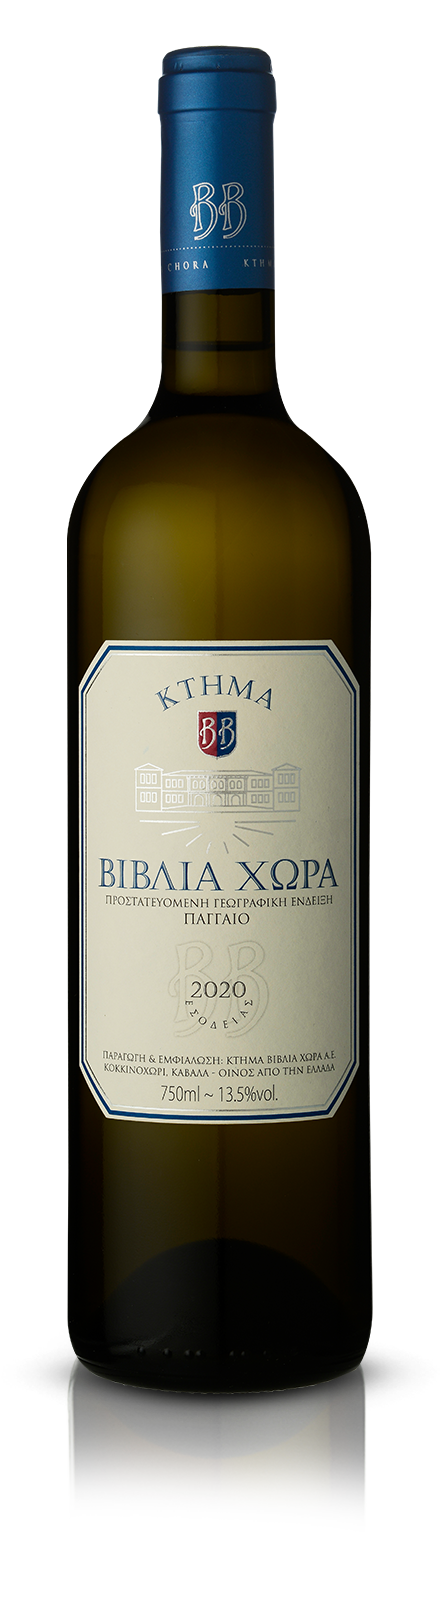 Biblia Chora Weiß trocken Wein 750ml 13,5% Vol